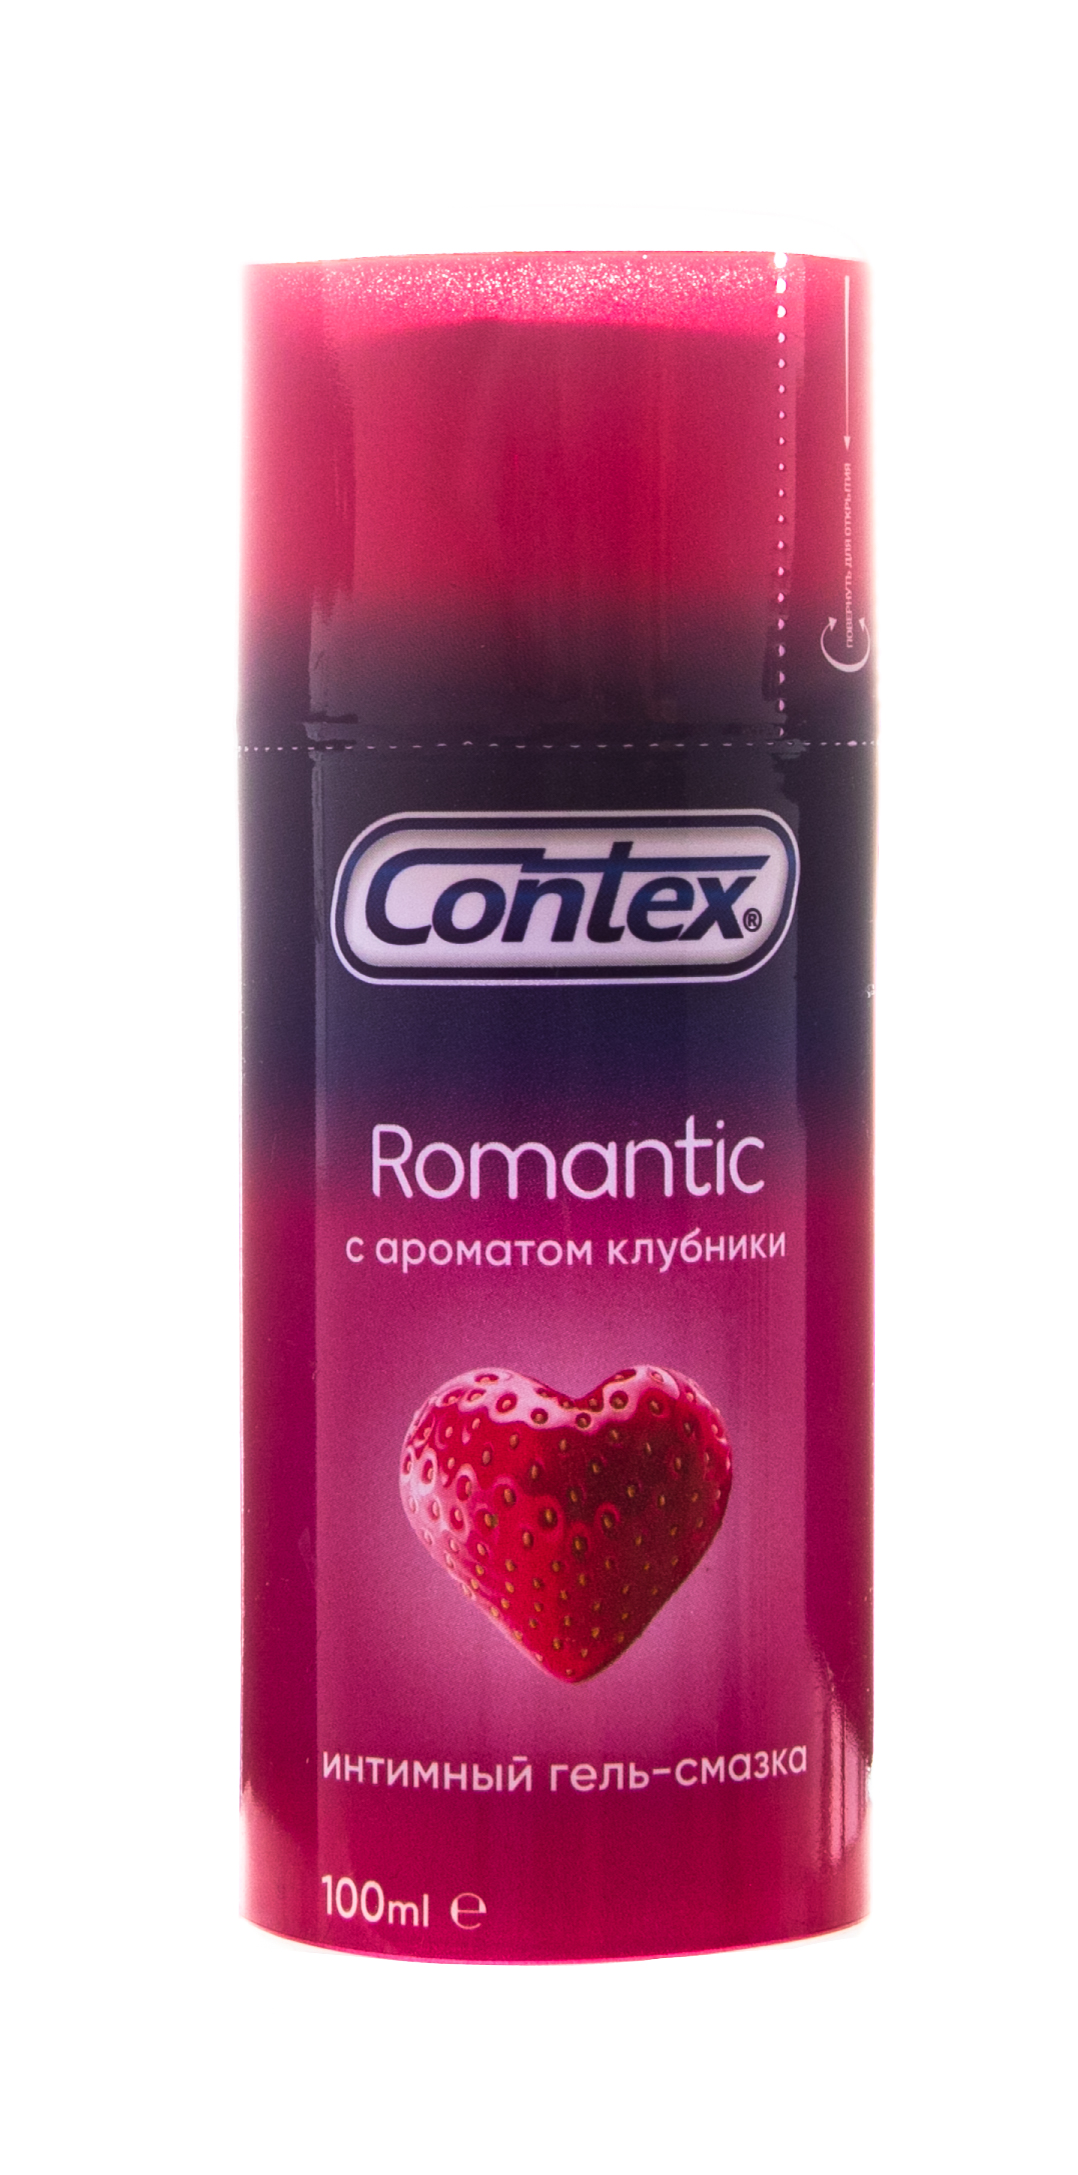 Contex Гель-смазка Romantic ароматизированный, 100 мл (Conte